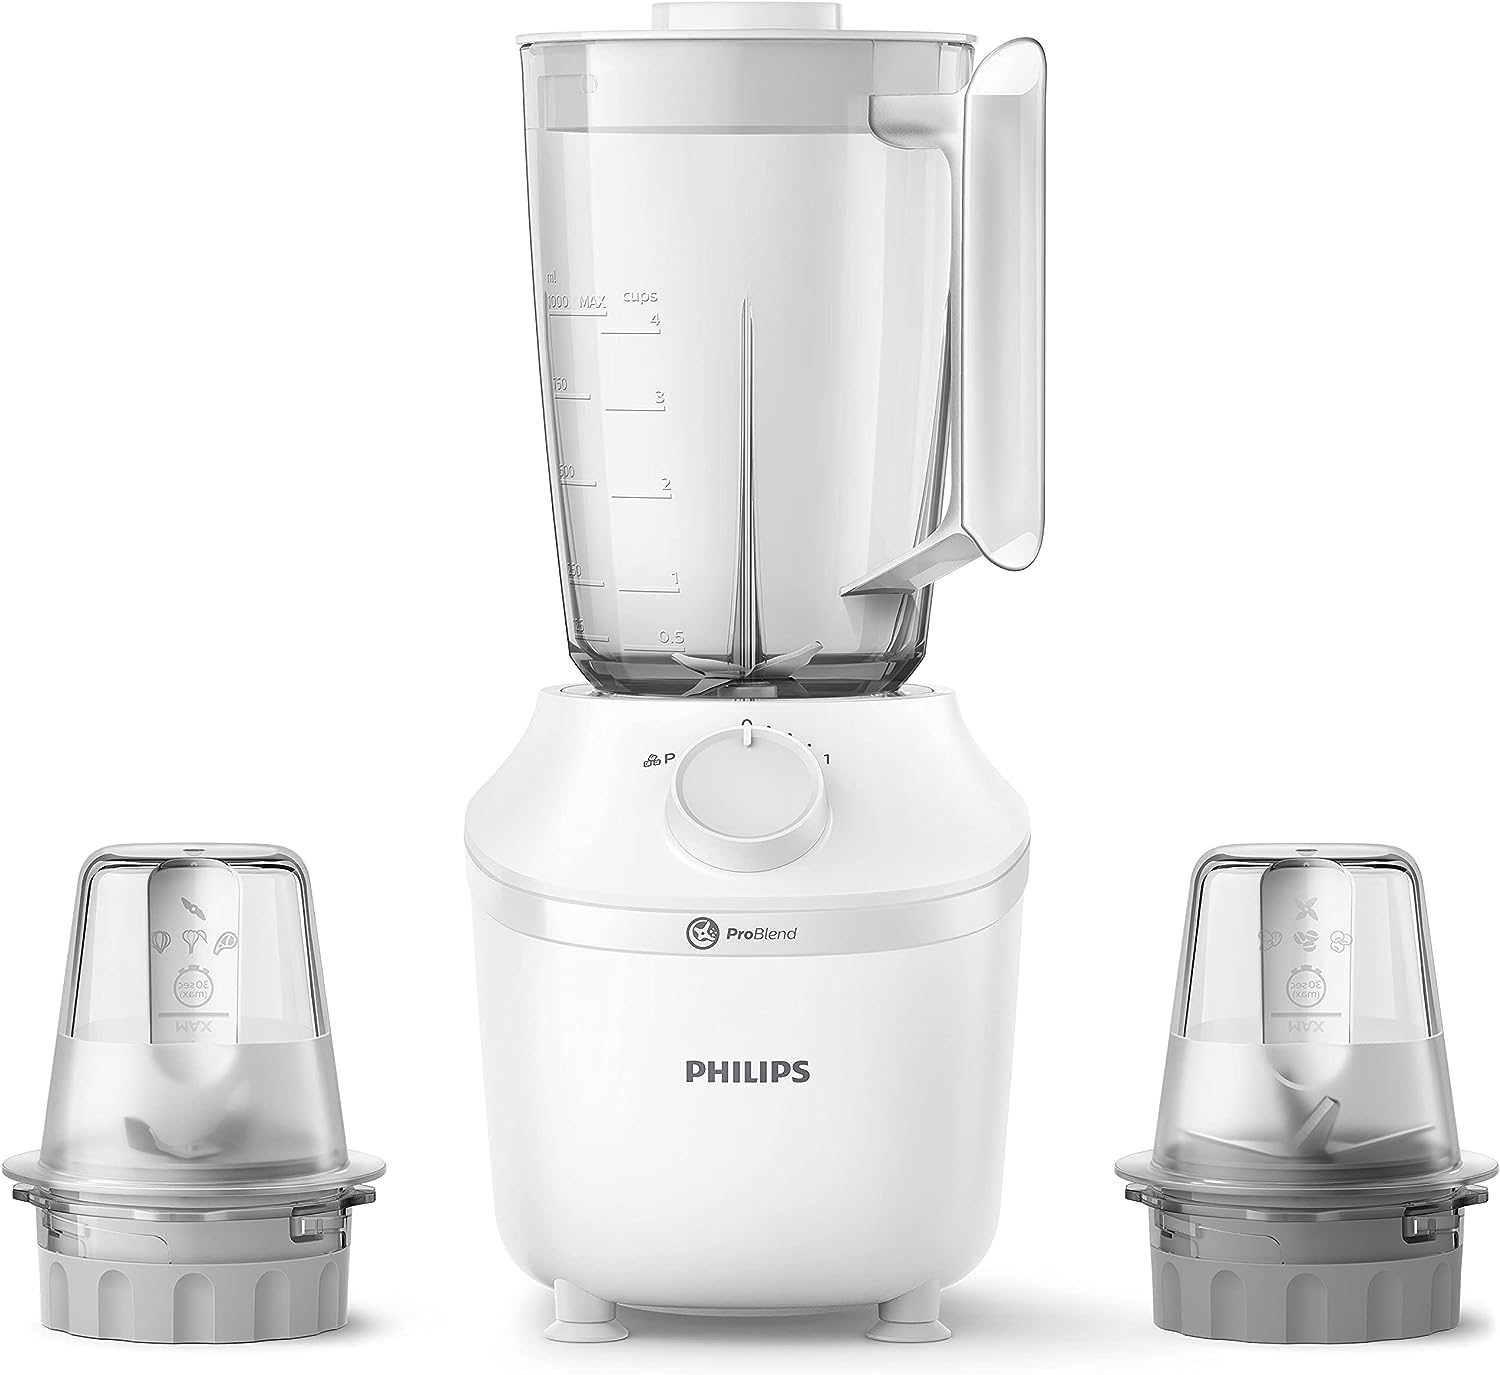 Philips Blender 450W - 1.9L, White HR2041/30 + 2 Mills